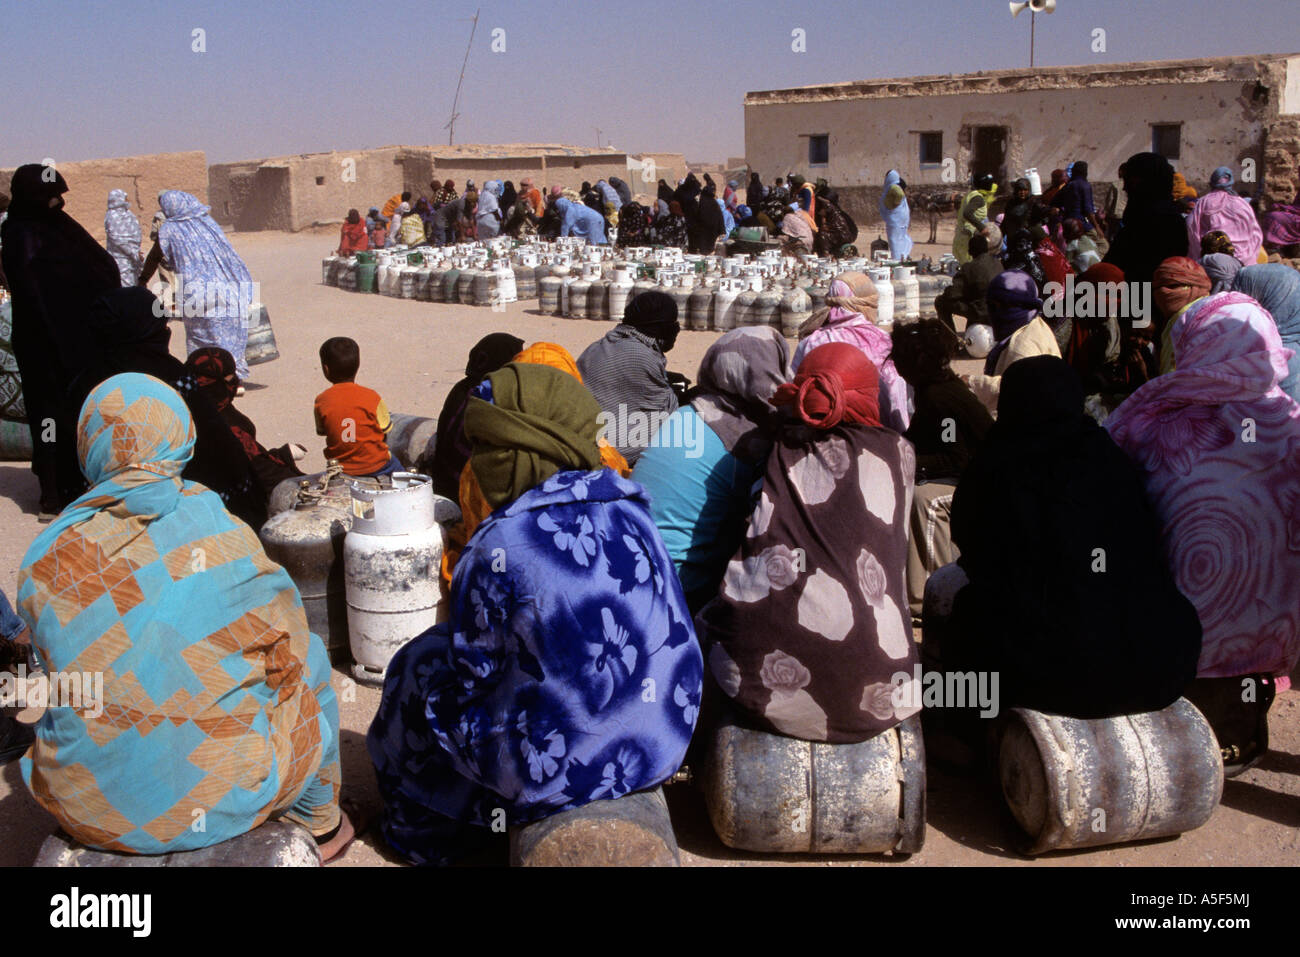 Saharauischen Flüchtlingen in Tindouf westlichen Algerien Gasflaschen einsammeln Stockfoto